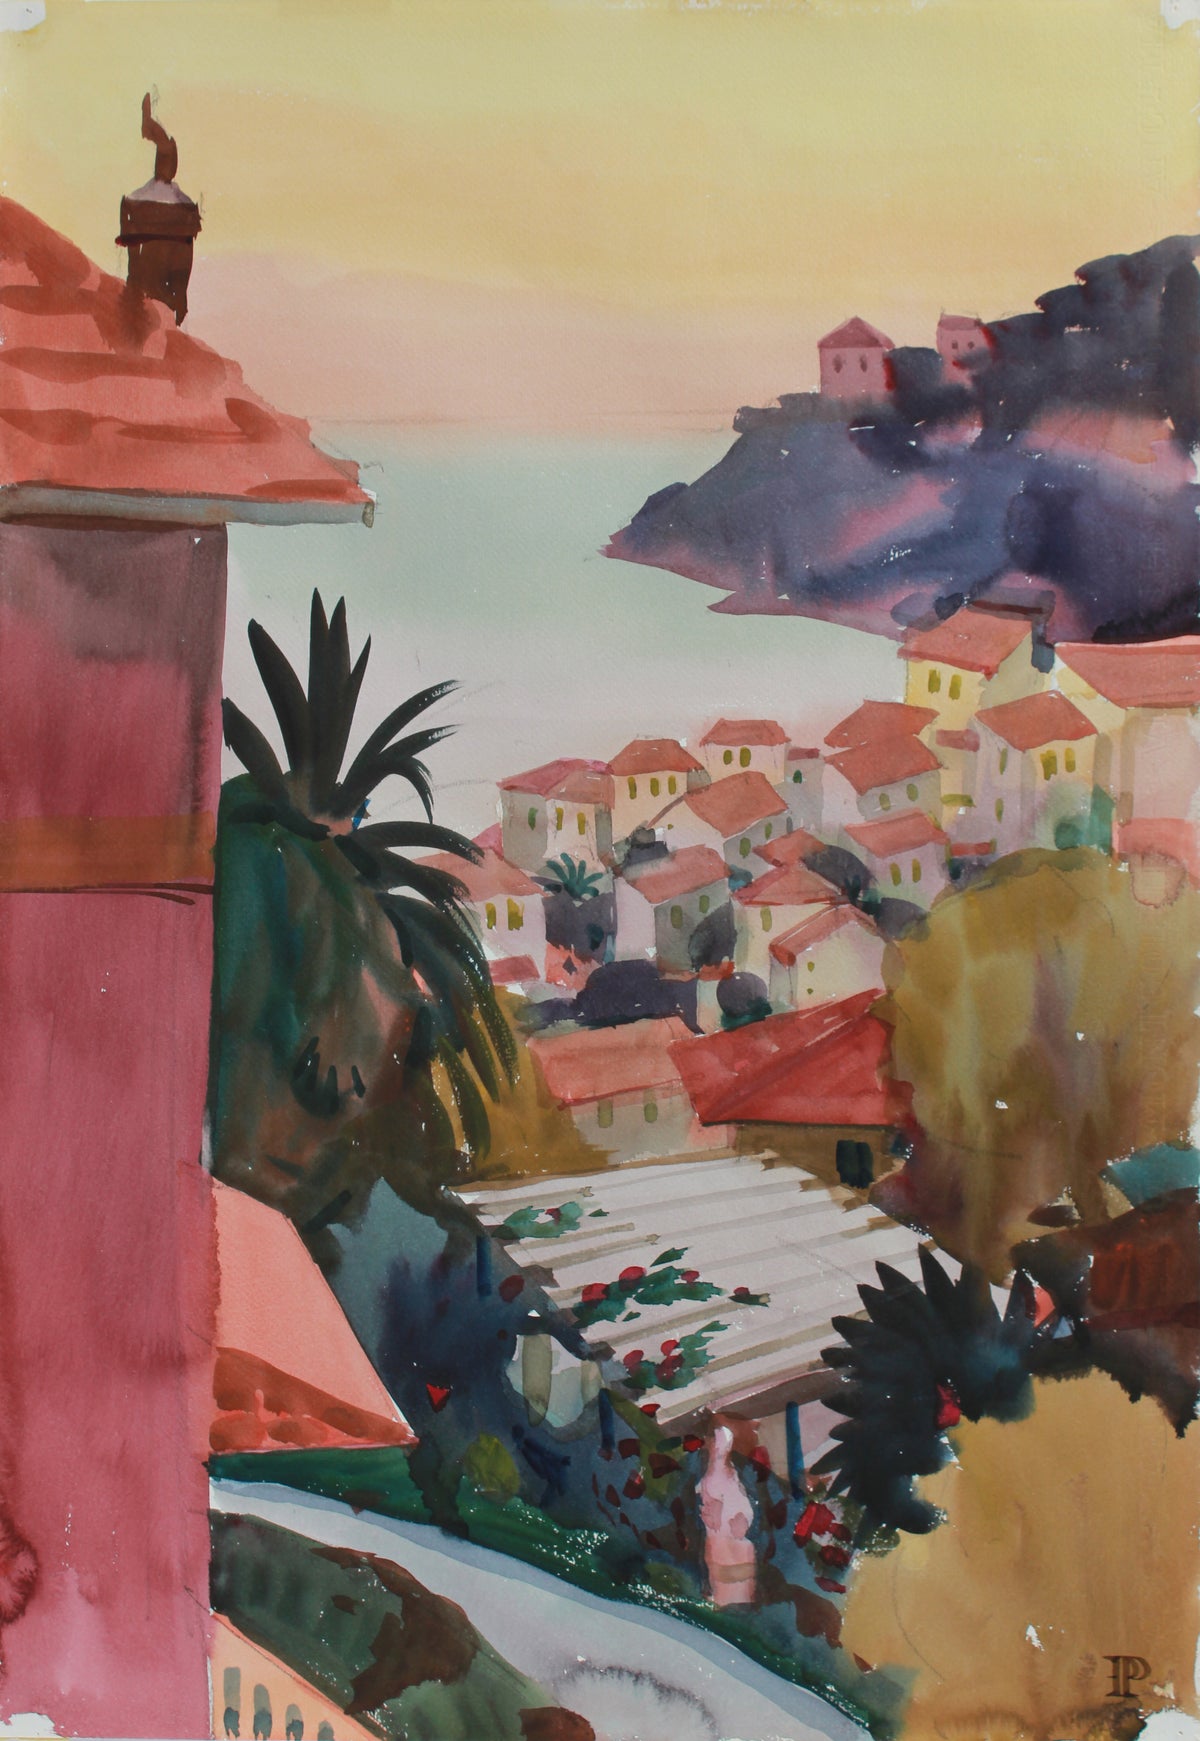 &lt;i&gt;Villefranche&lt;/i&gt; &lt;br&gt;1965 Watercolor &amp; Graphite &lt;br&gt;&lt;br&gt;#A9377